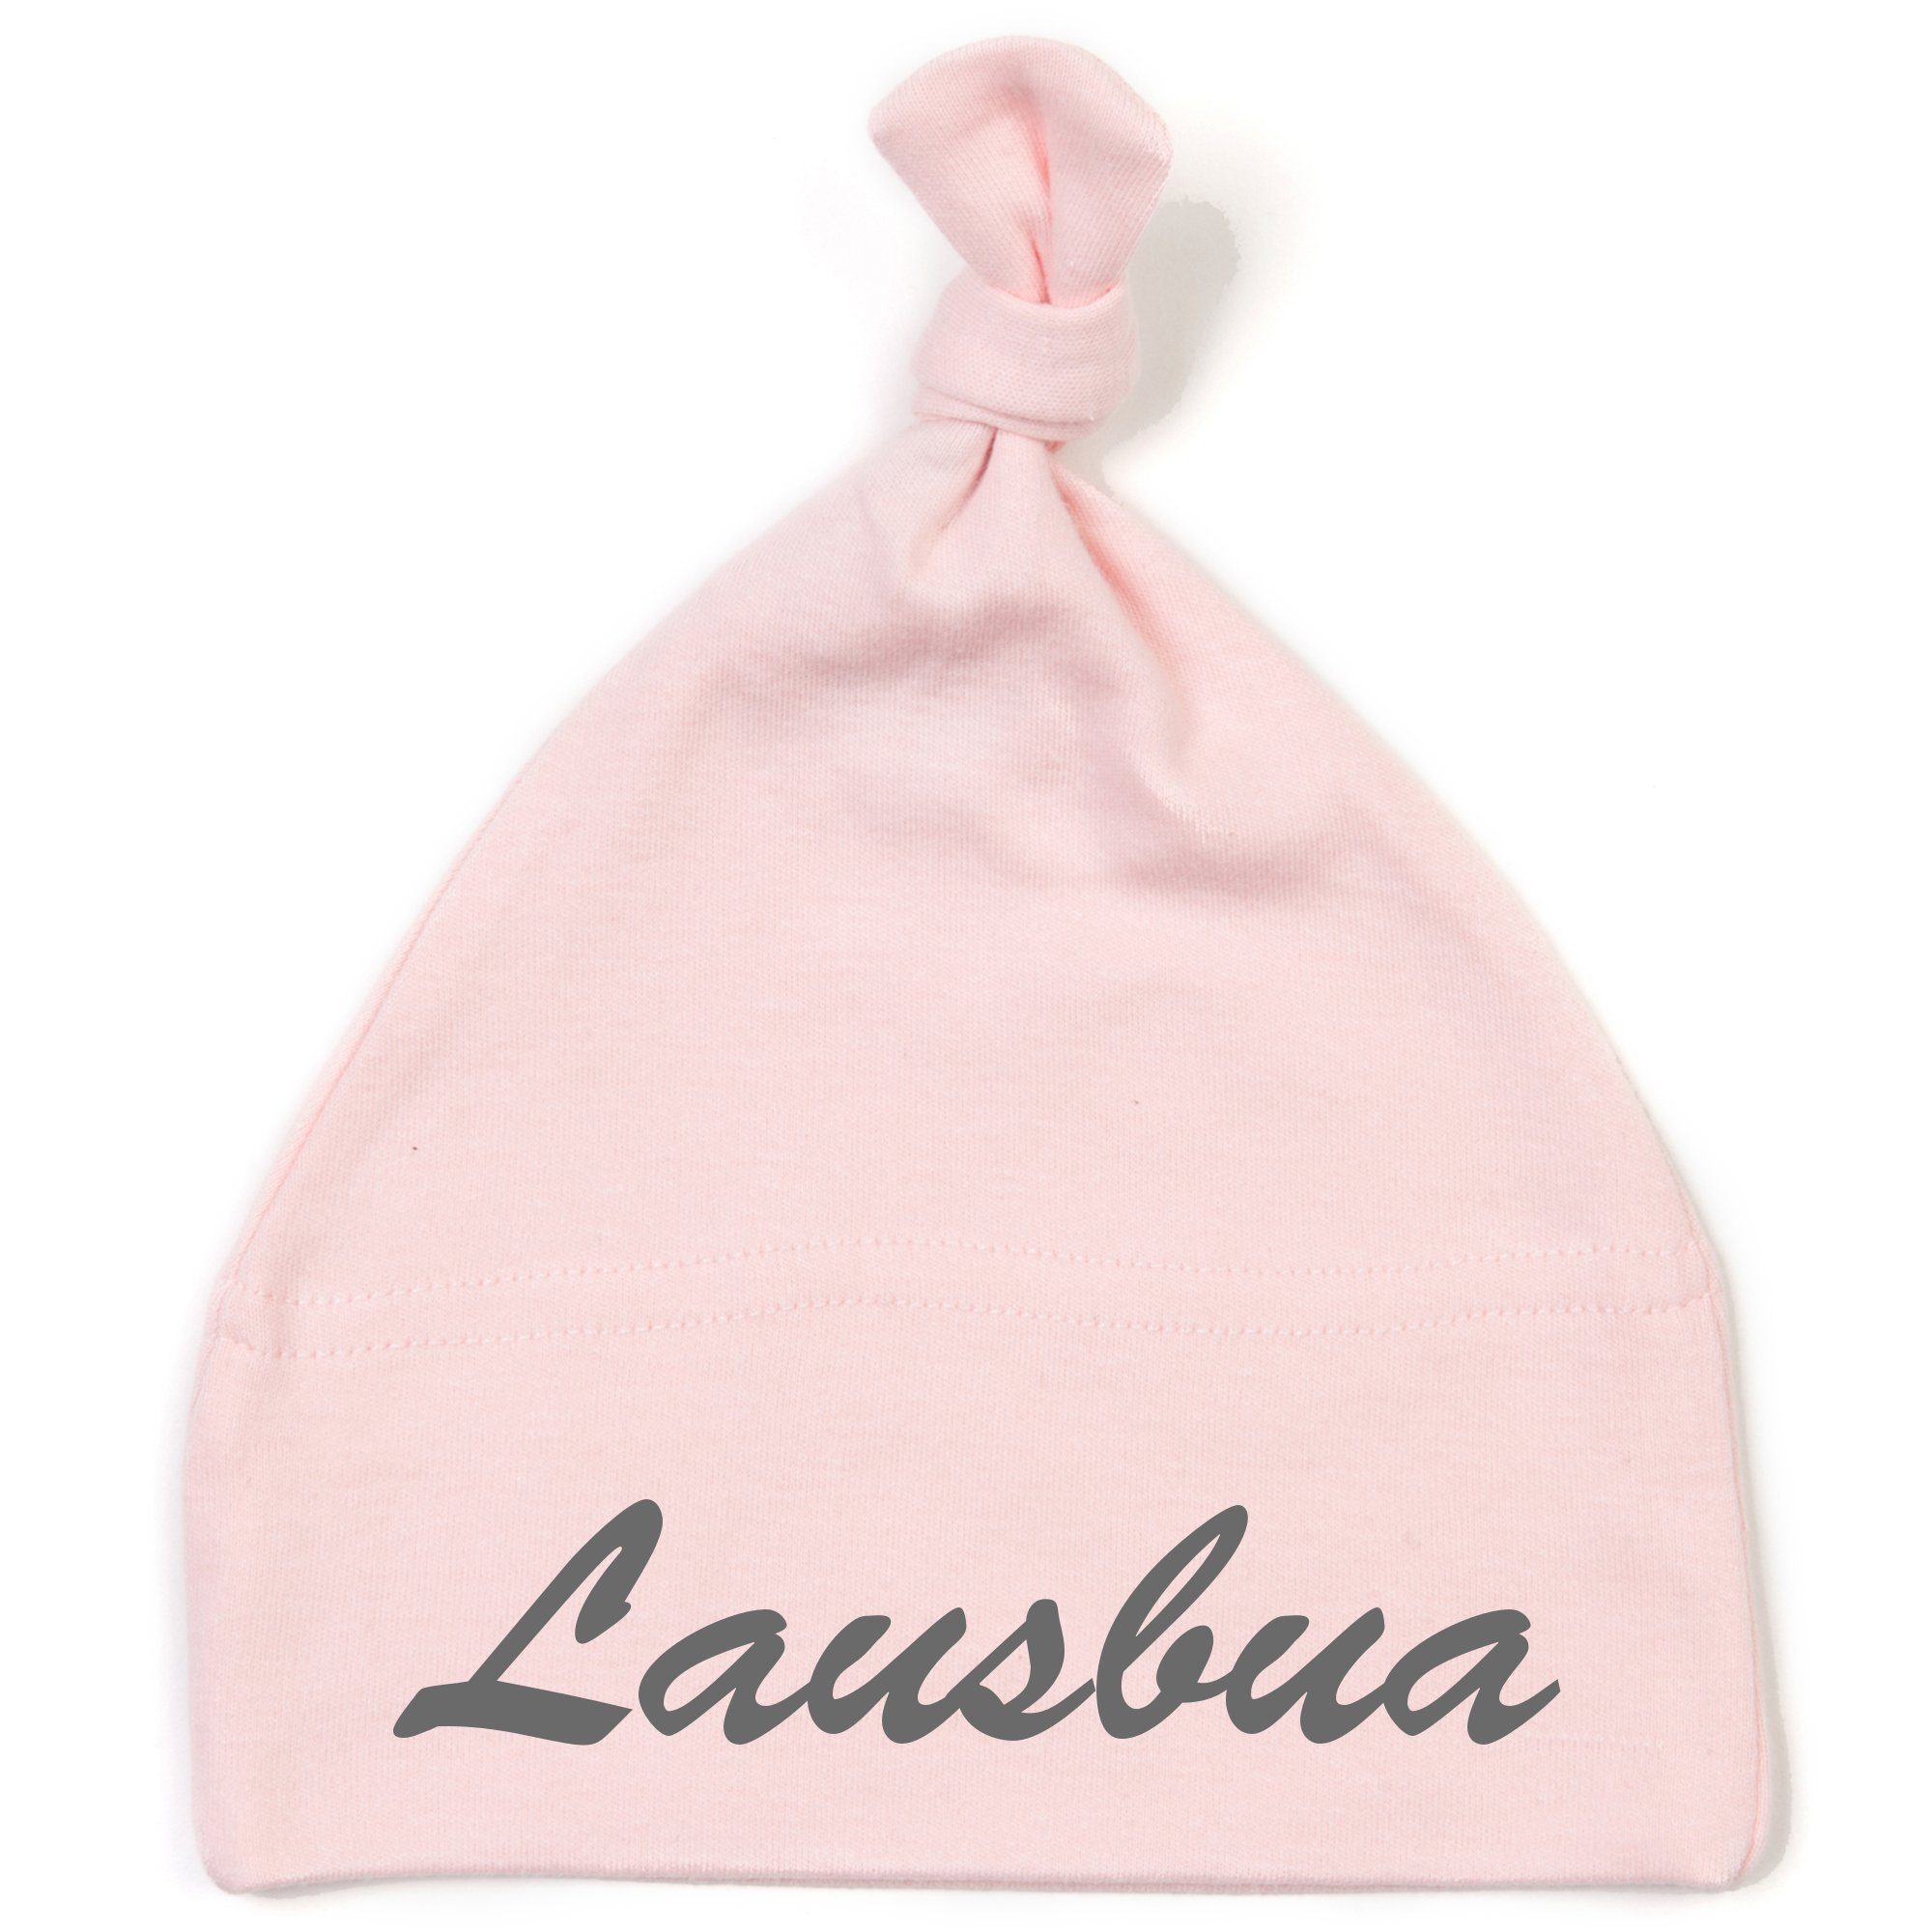 hochwertig Erstlingsmütze bestickt mit Lausbua Stickerei mit / gestickt mit Schnoschi Lausbua Babymütze und Knoten rosa